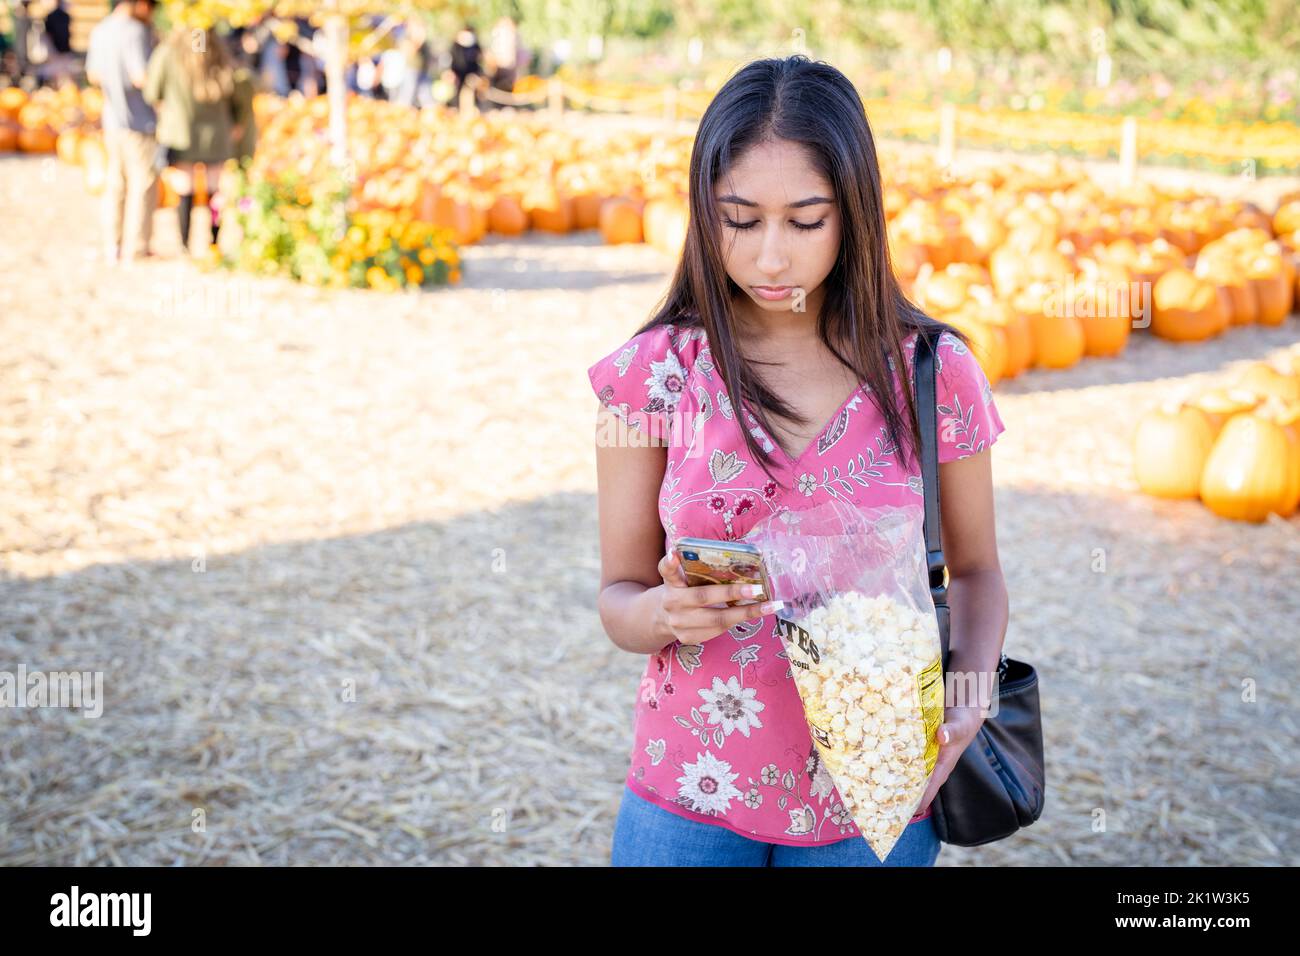 Portrait de célébration d'automne d'une jeune femme en train de manger du maïs de la bouilloire dans une ferme de citrouilles pendant qu'elle est sur son téléphone intelligent Banque D'Images